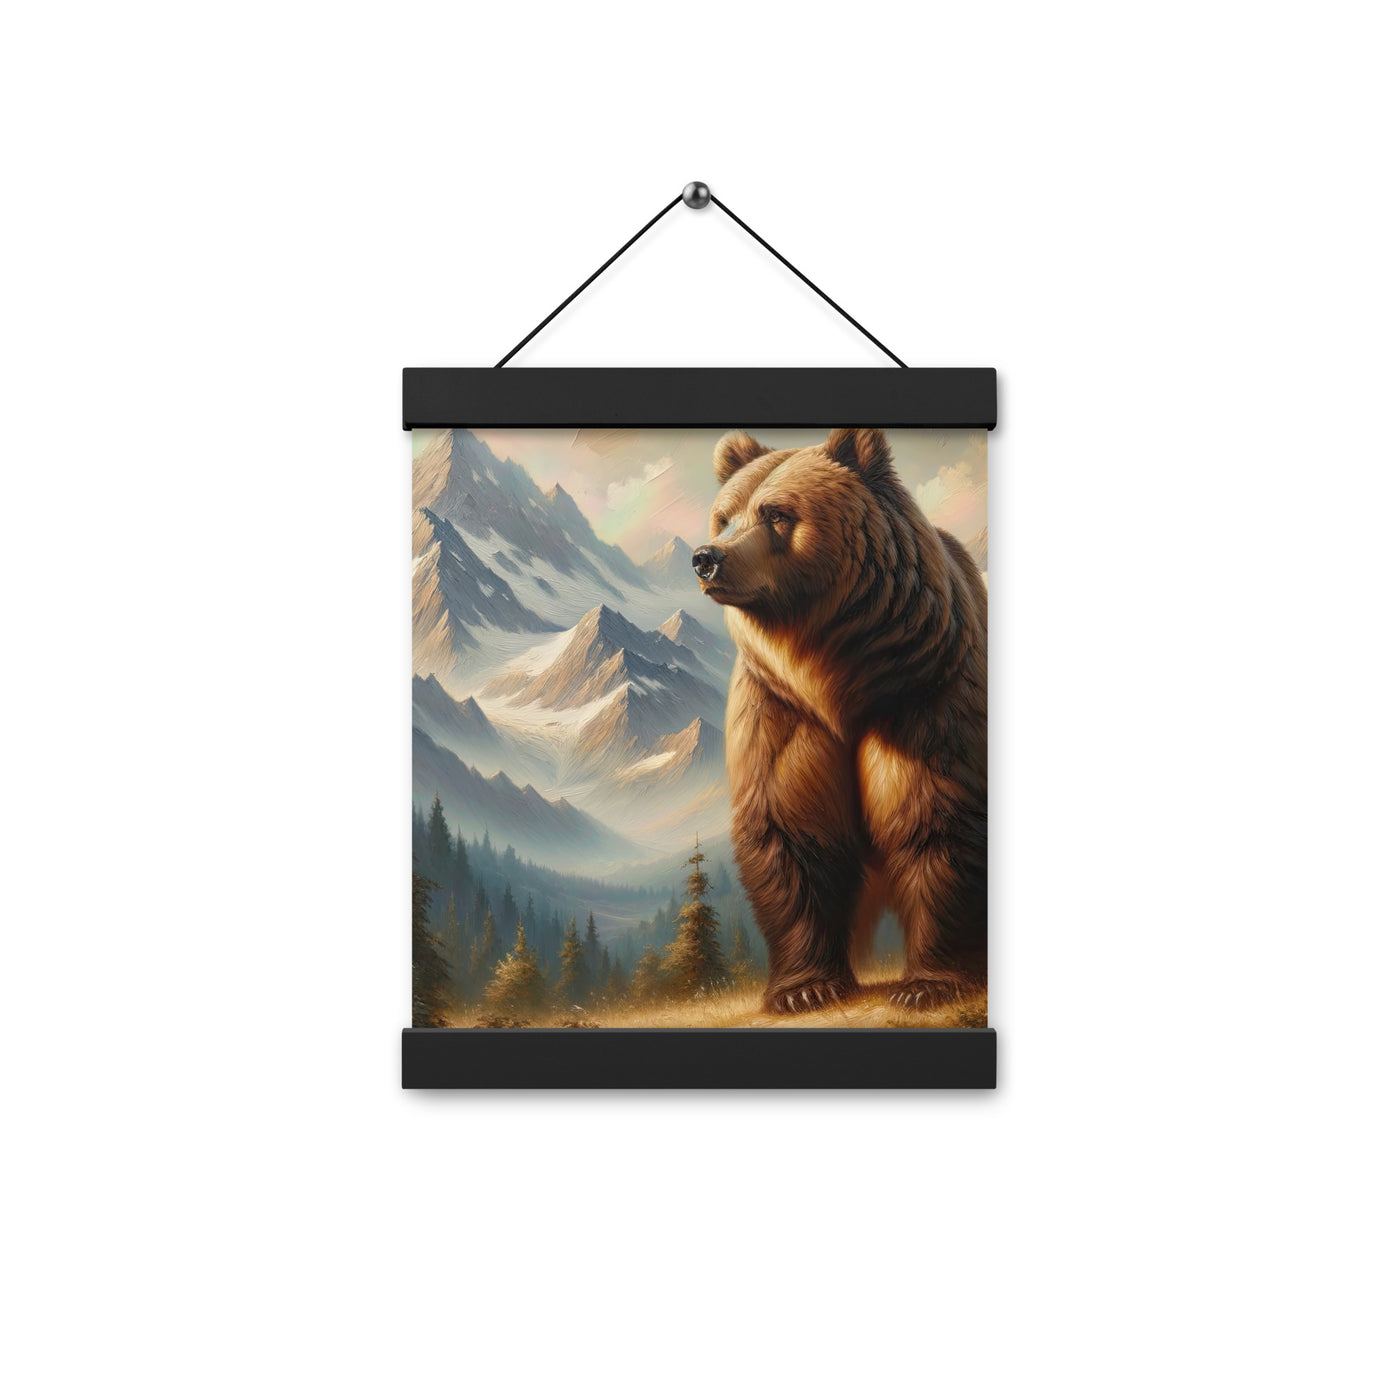 Ölgemälde eines königlichen Bären vor der majestätischen Alpenkulisse - Premium Poster mit Aufhängung camping xxx yyy zzz 20.3 x 25.4 cm